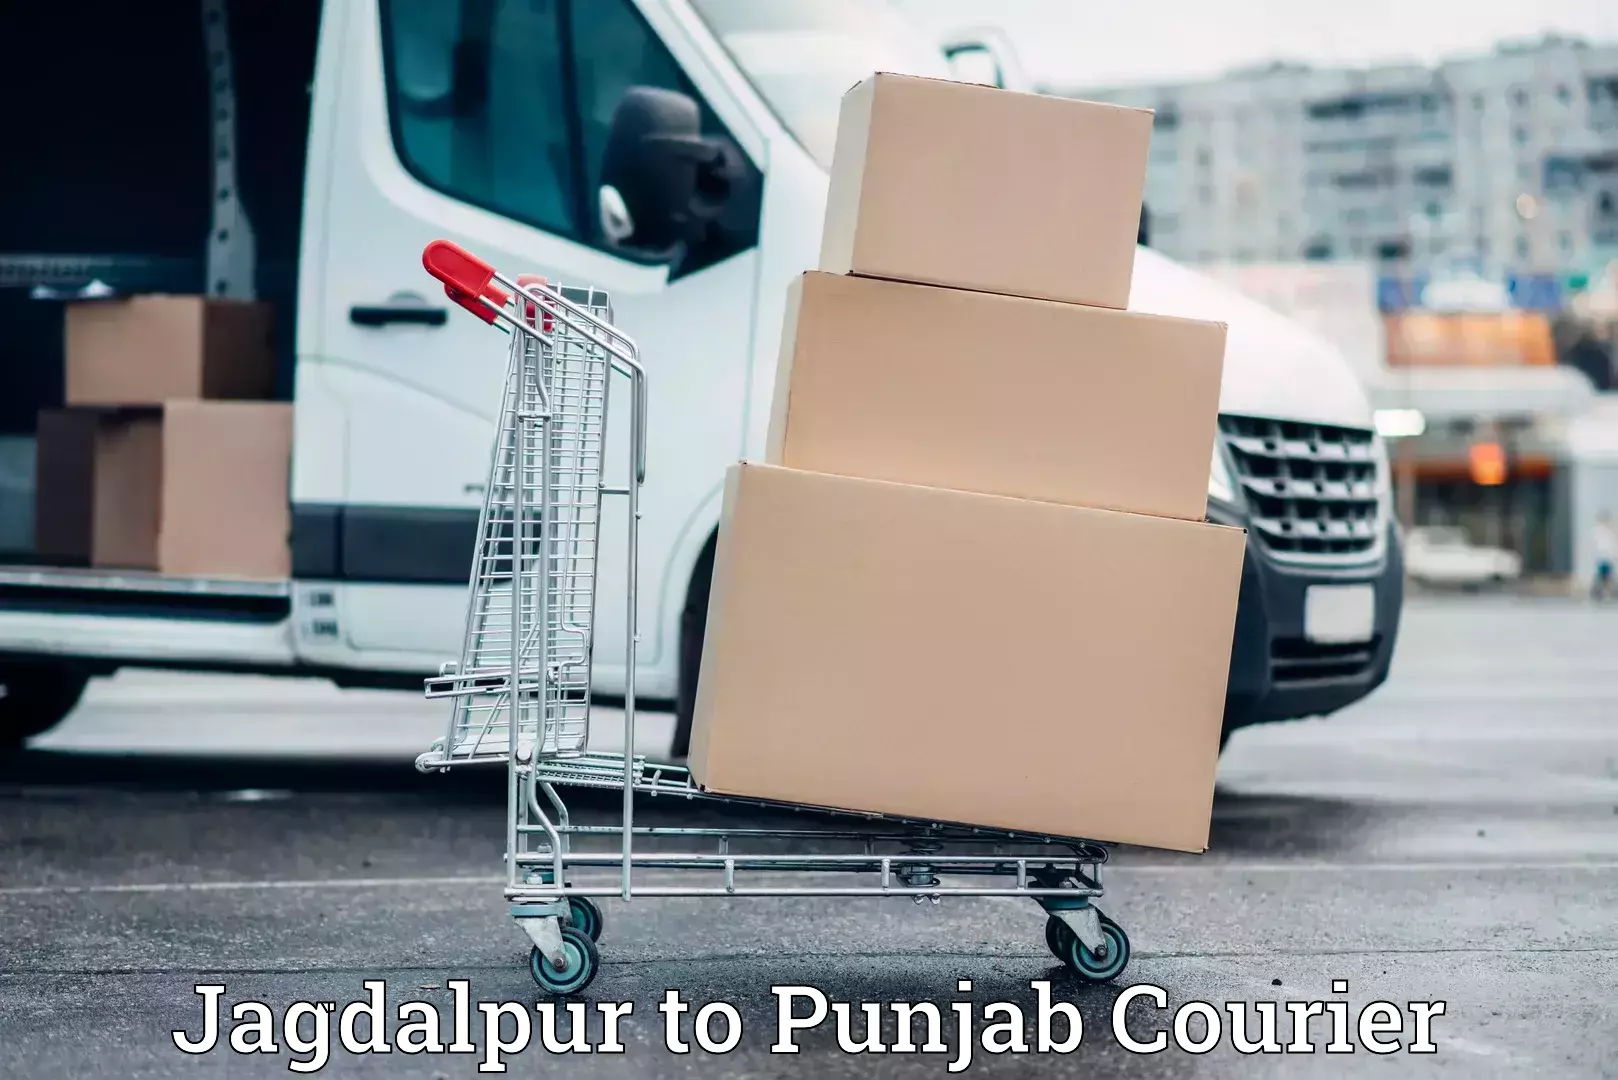 Stress-free household moving Jagdalpur to Punjab